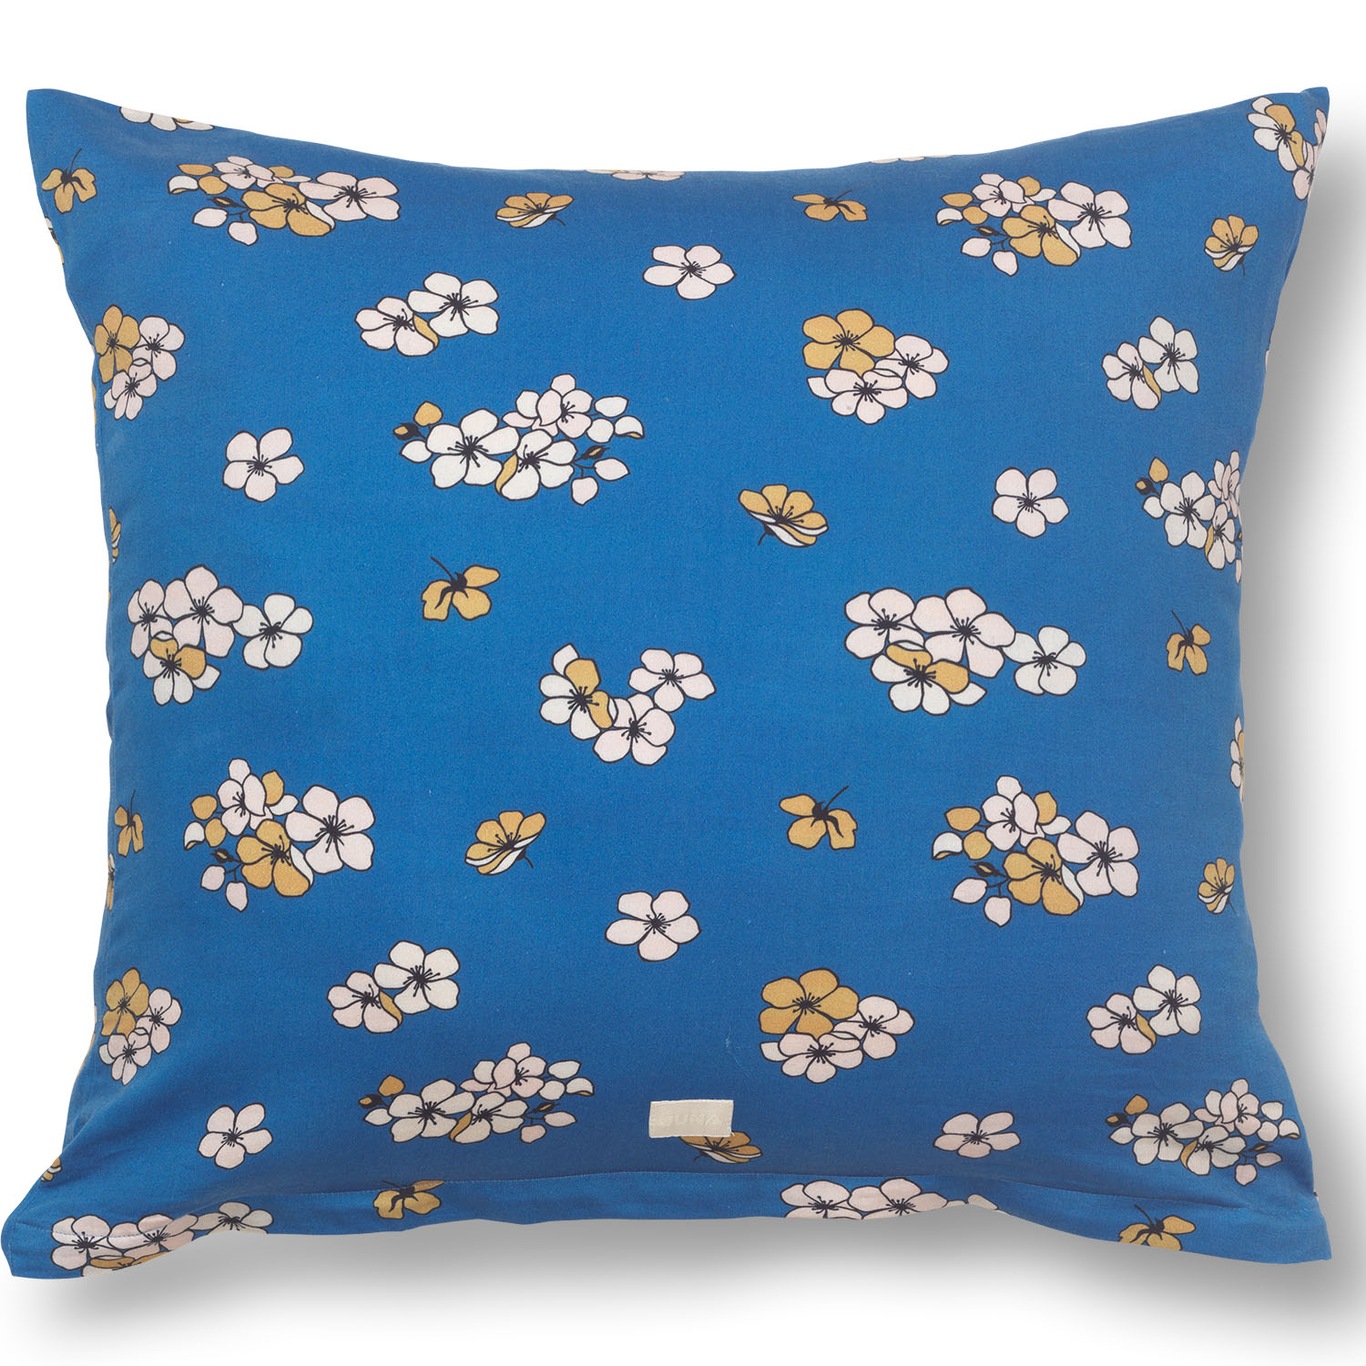 Grand Pleasantly Pillowcase 50x60 cm, Blue